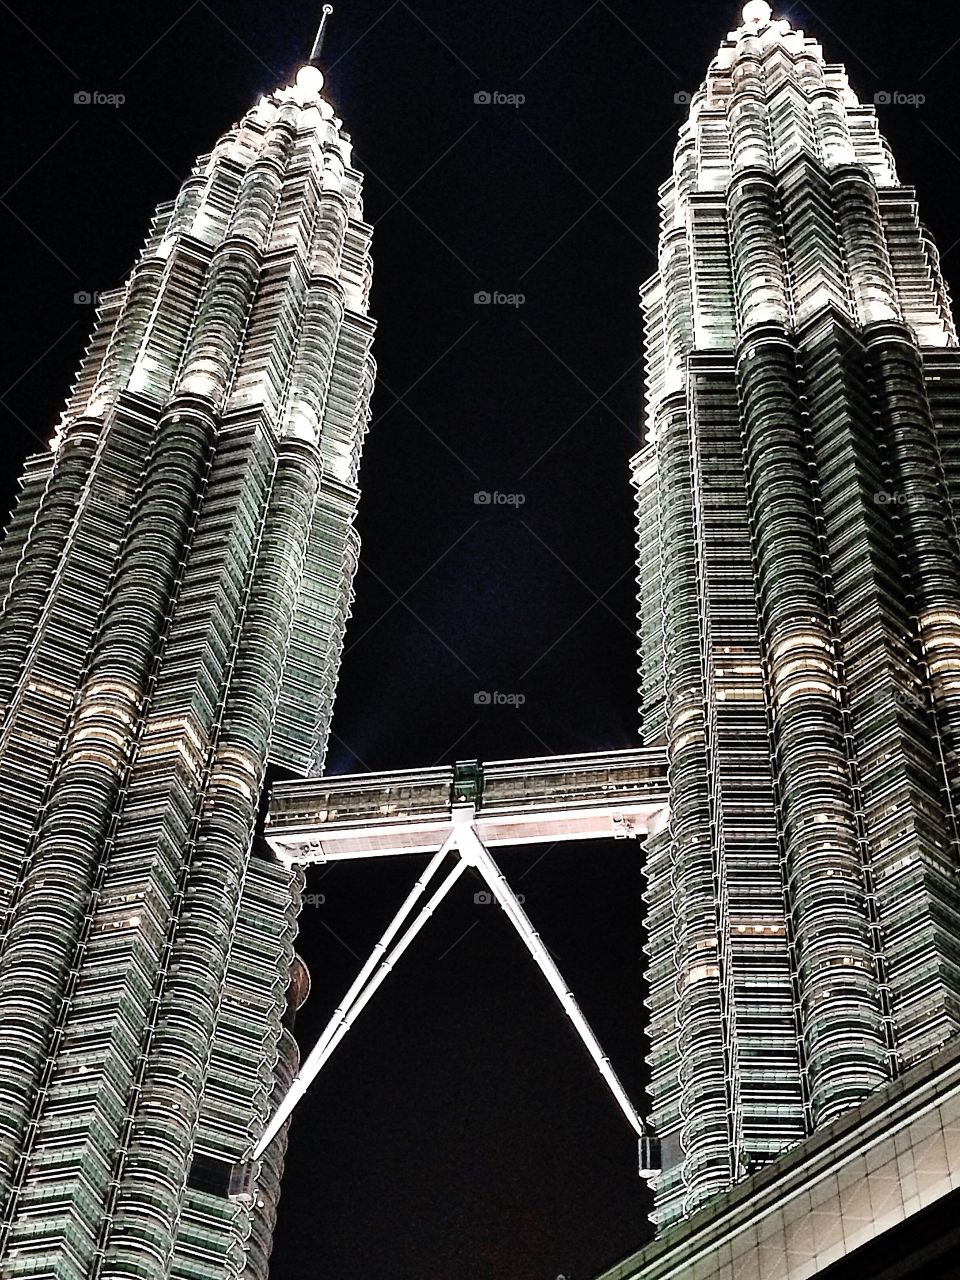 Malaysia . Petronas Twin Towers - Kuala Lumpur, Malaysia 